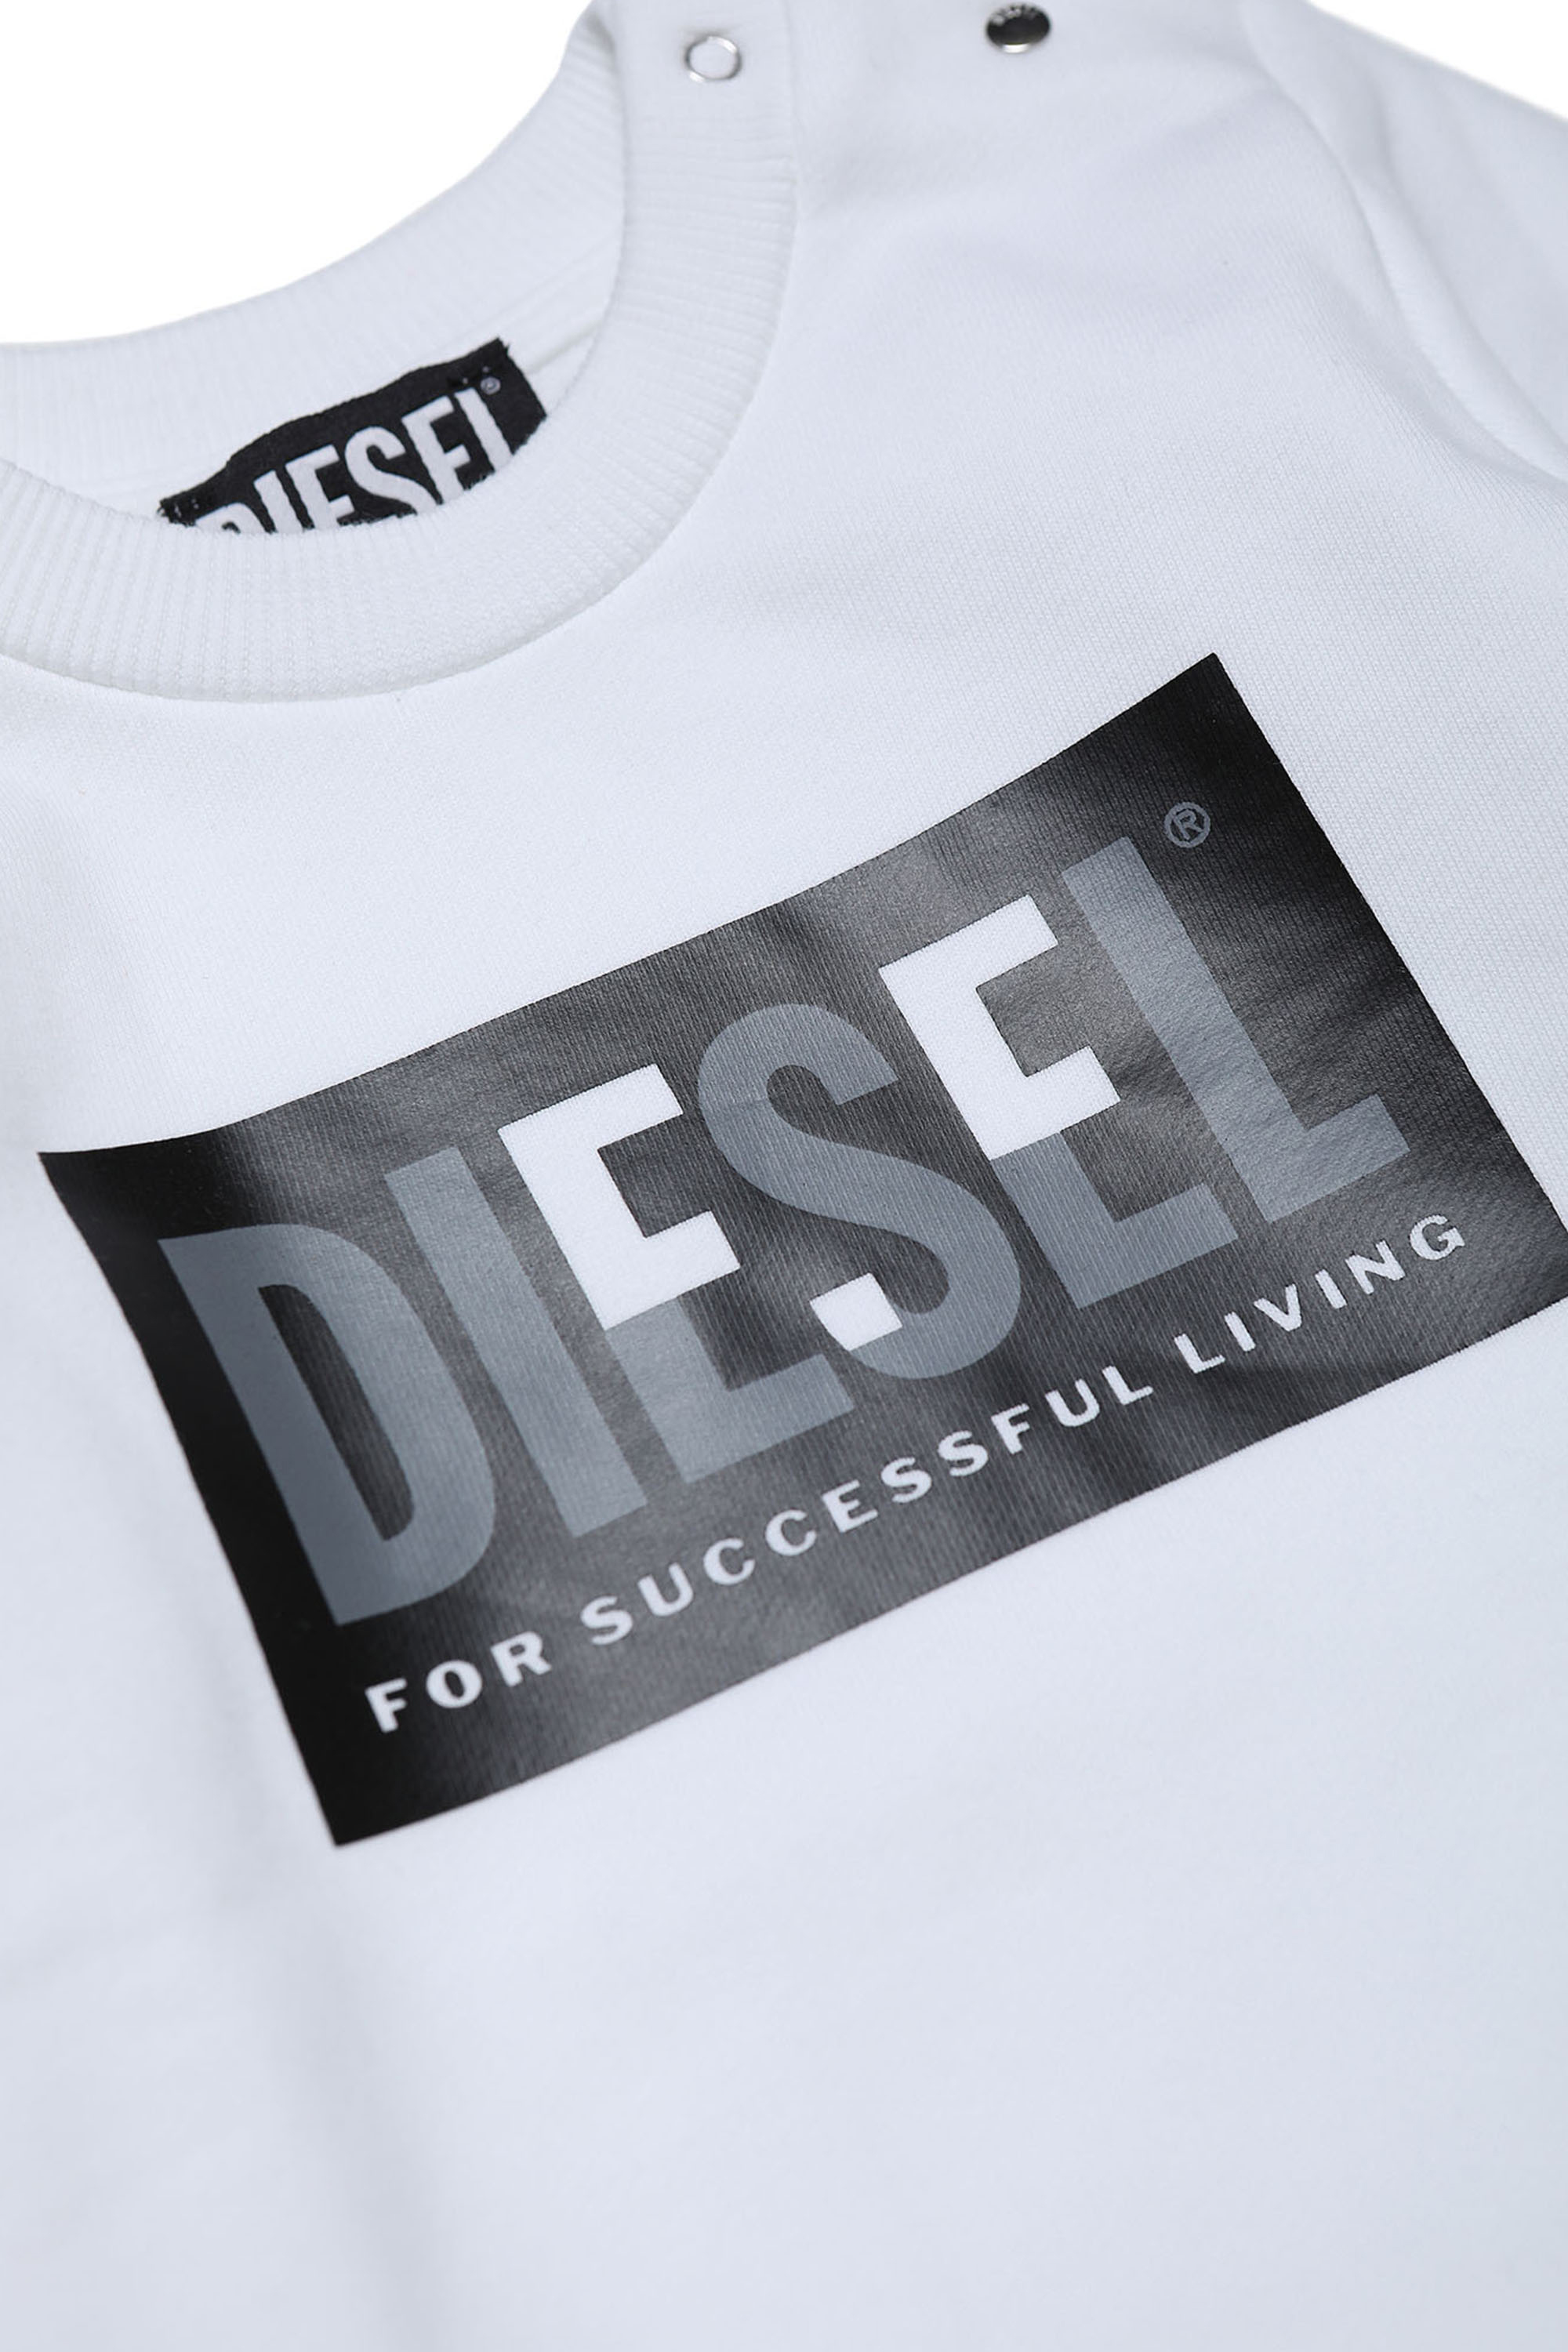 Diesel - SCREWMILEYB, Bianco - Image 3